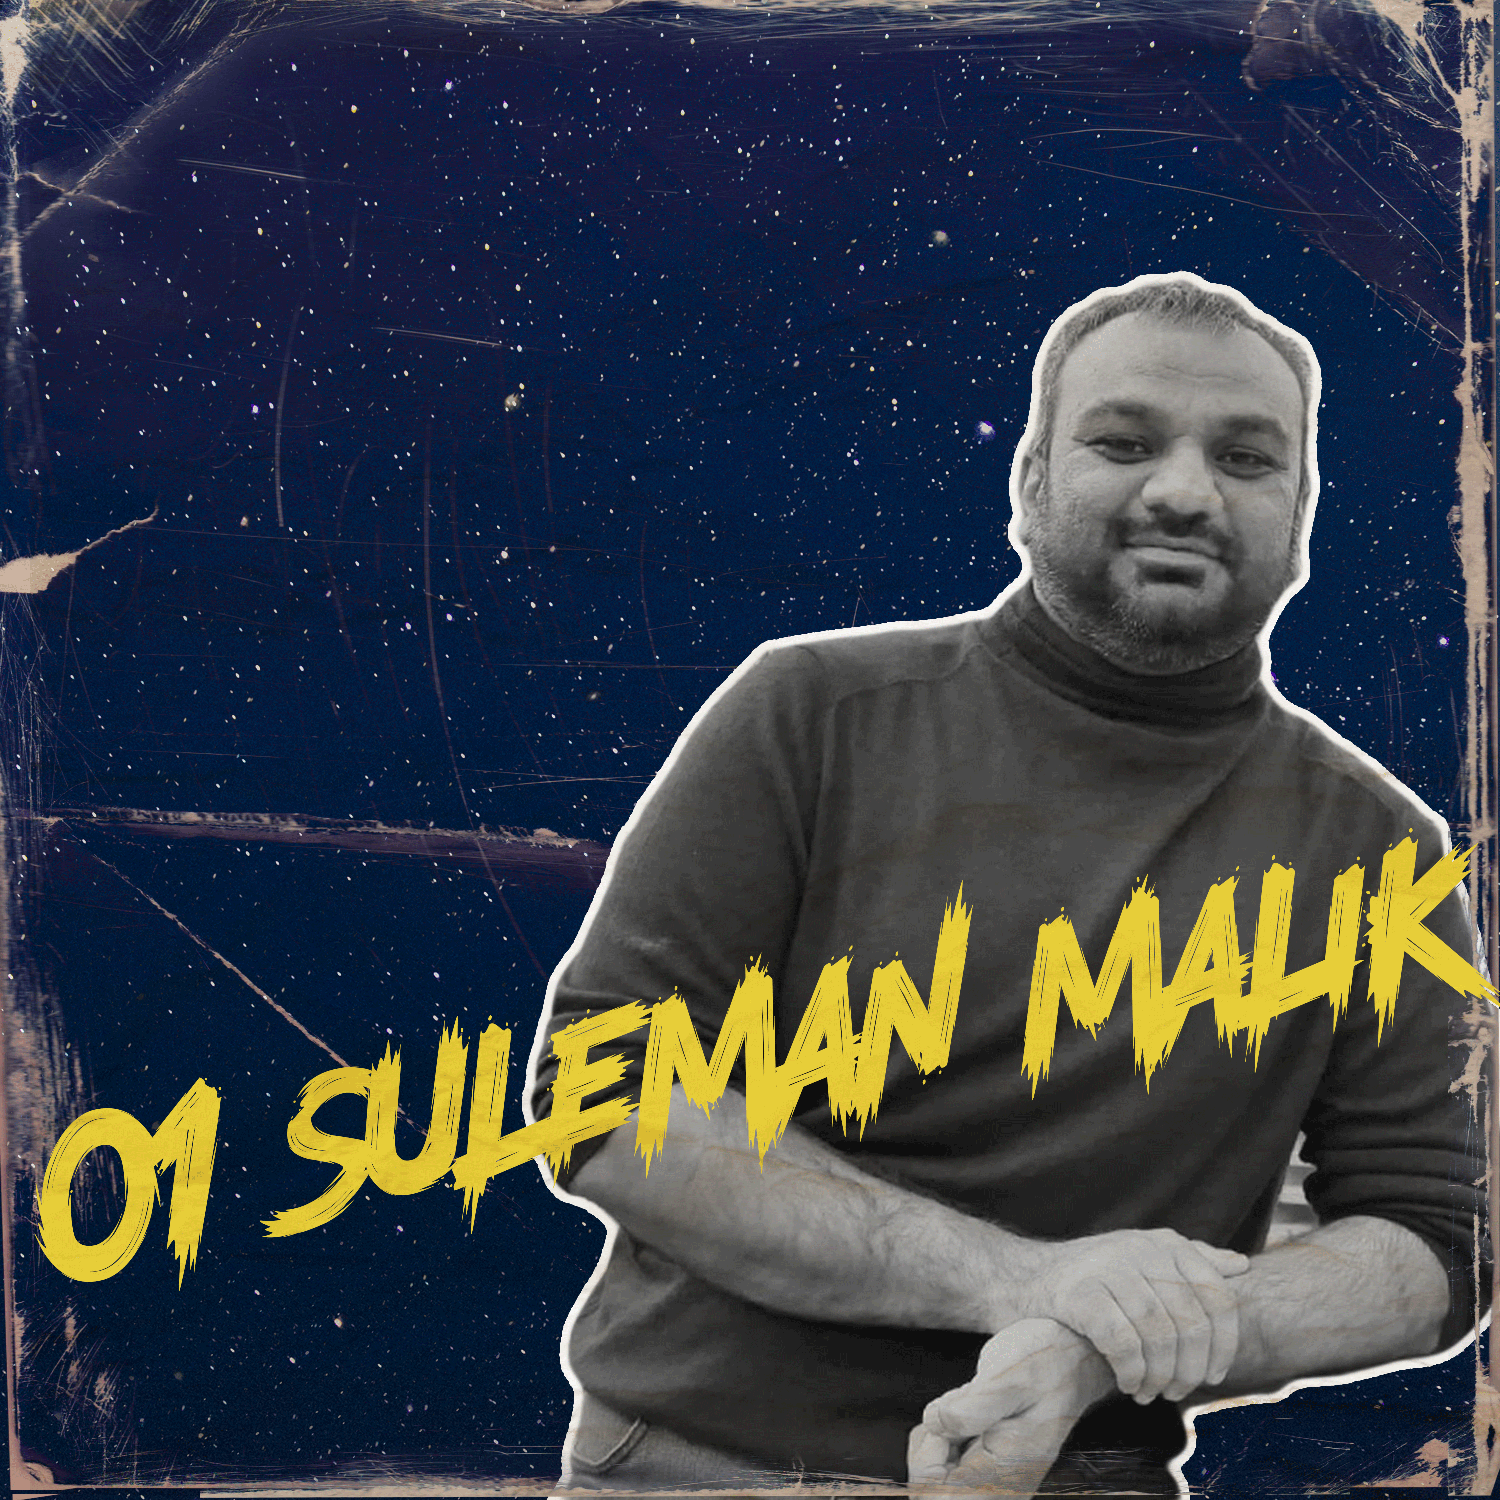 #1 Suleman Malik  - Wie baut man die erste Moschee Ostdeutschlands?